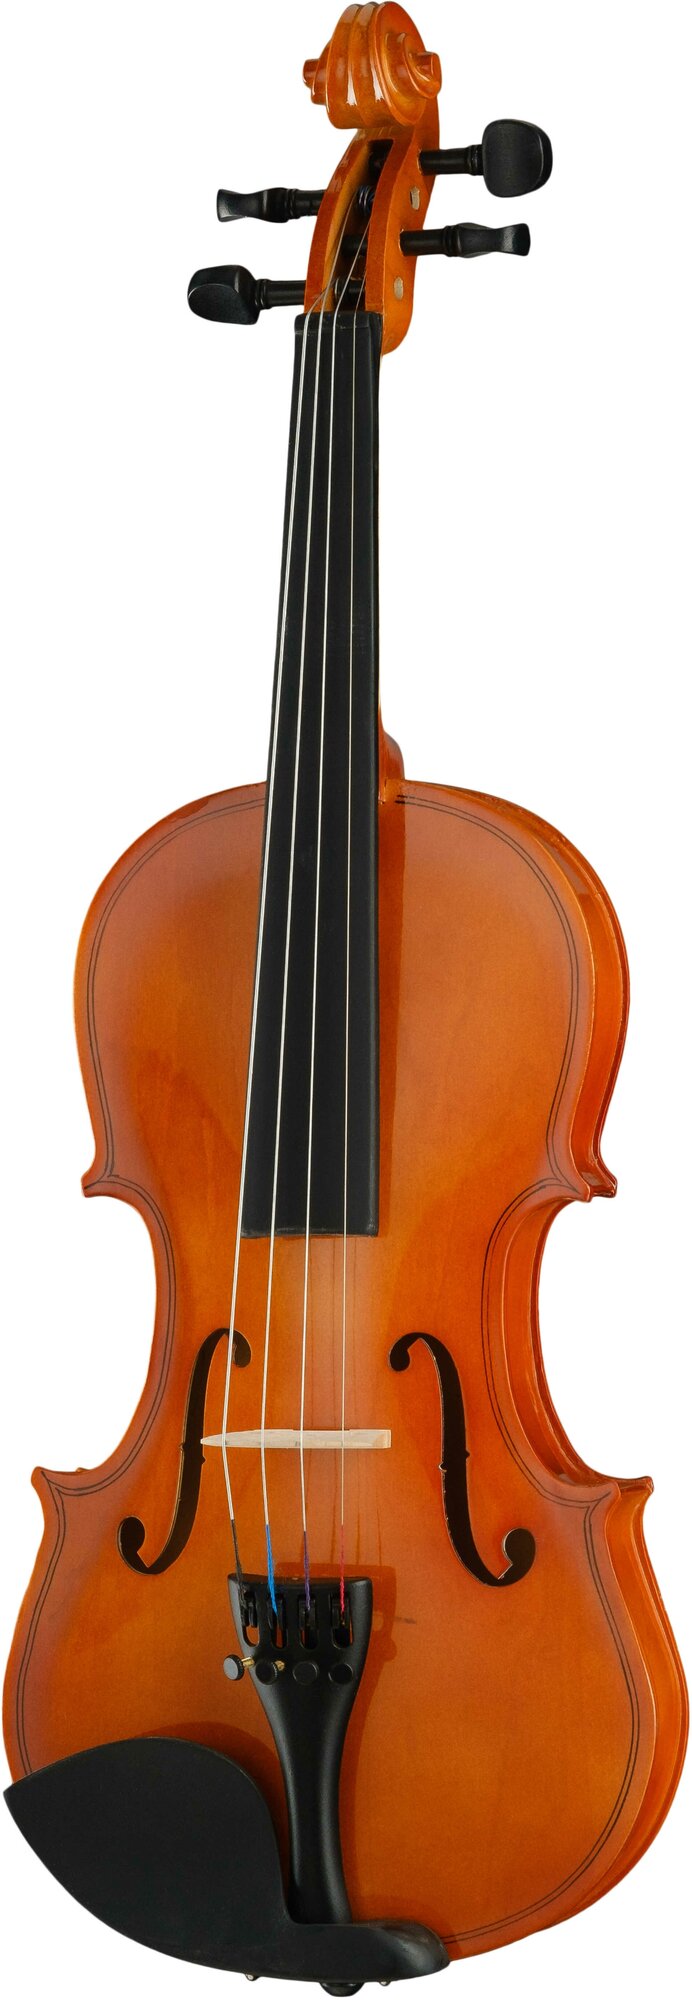 Скрипка Foix - фото №2